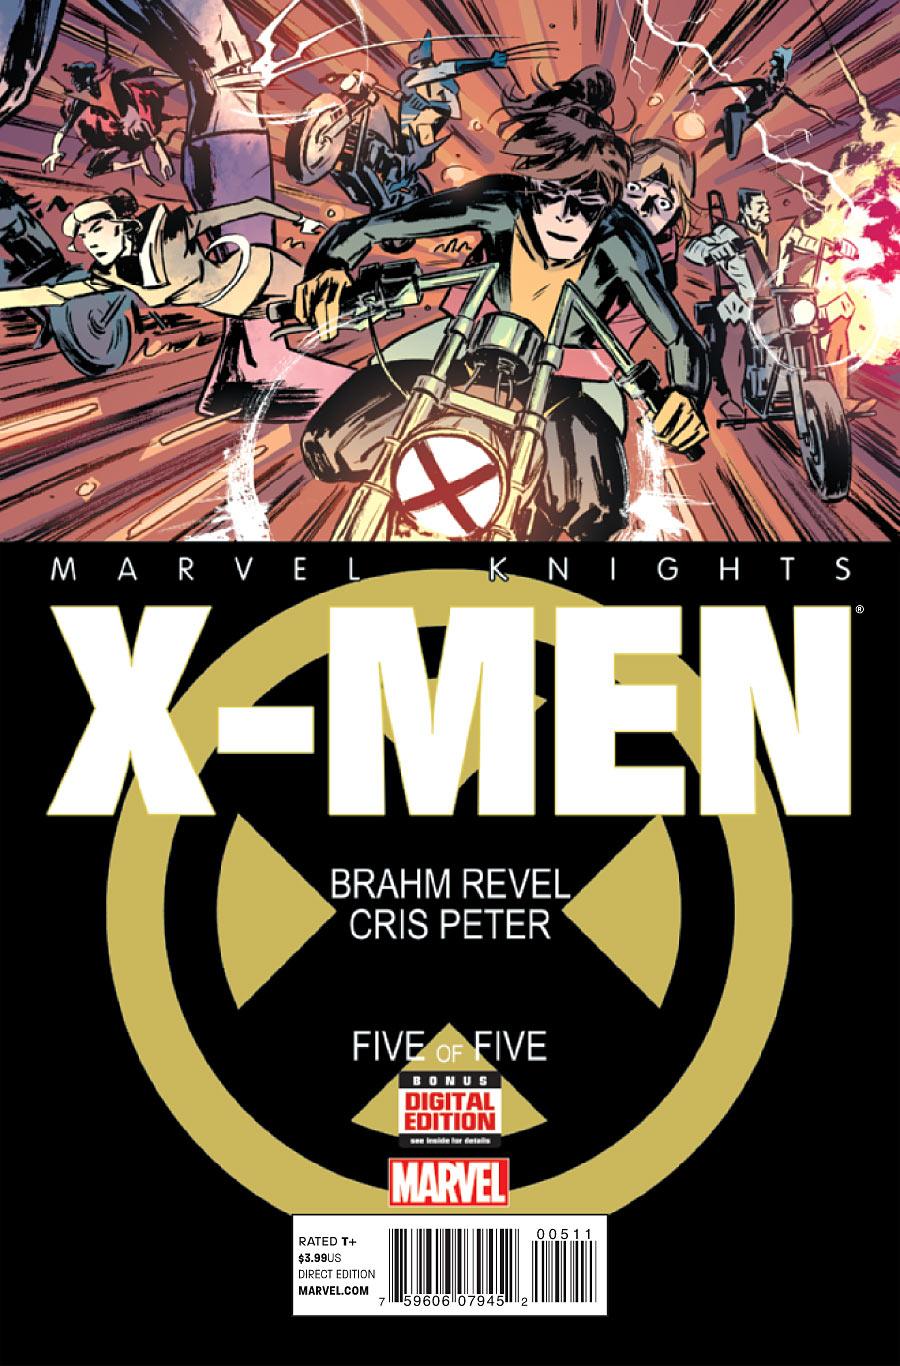 Marvel Knights: X-Men Vol. 1 #5